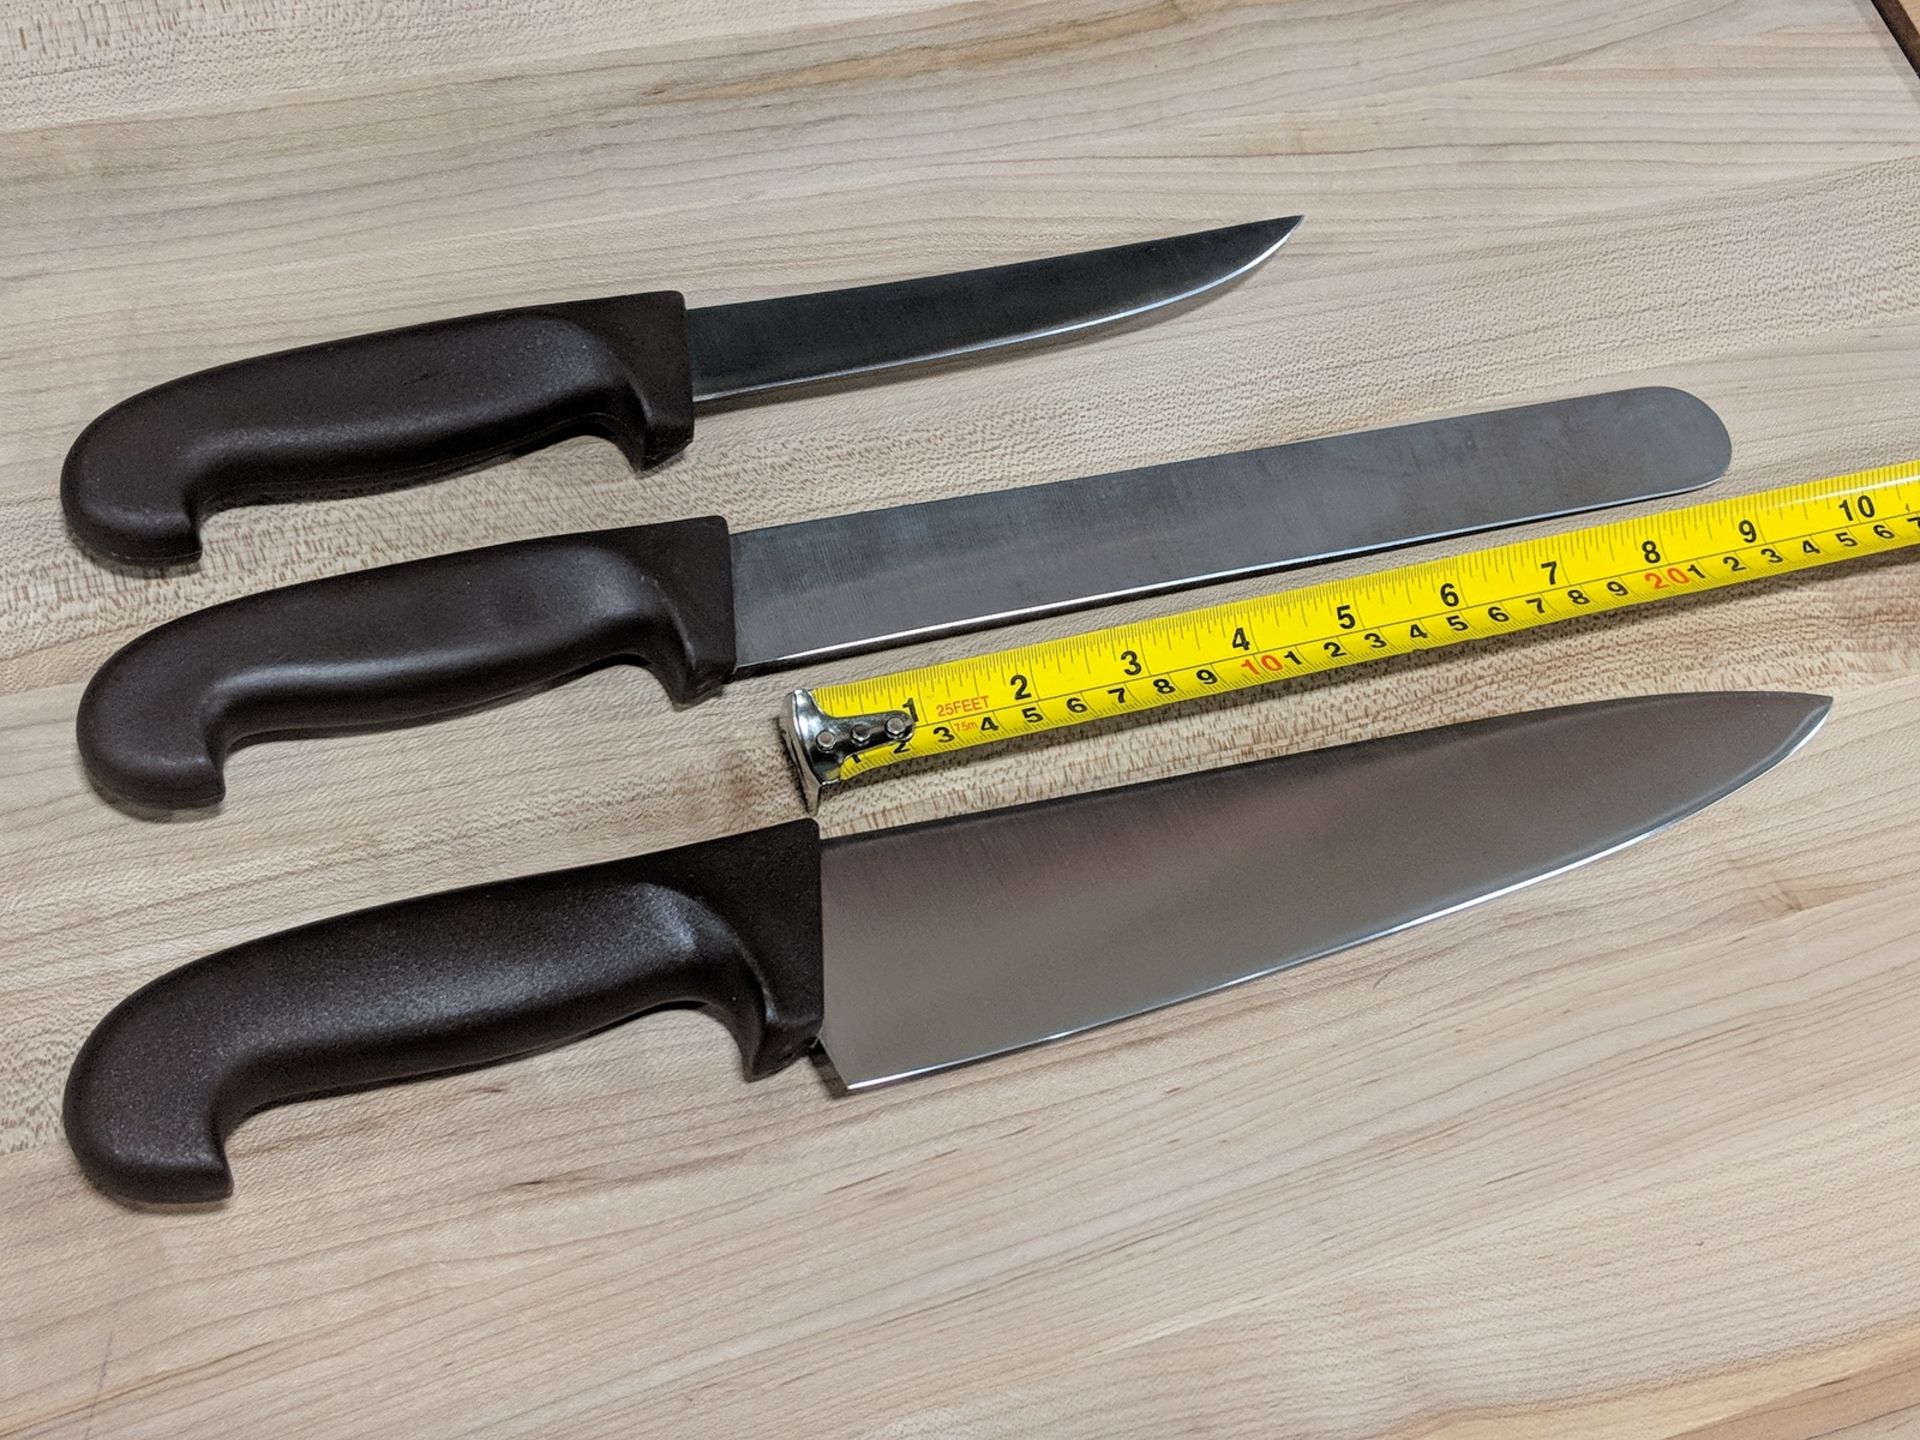 10" Chef Knife, 10" Slicing Knife, 6" Boning Knife - Set of 3 Knives